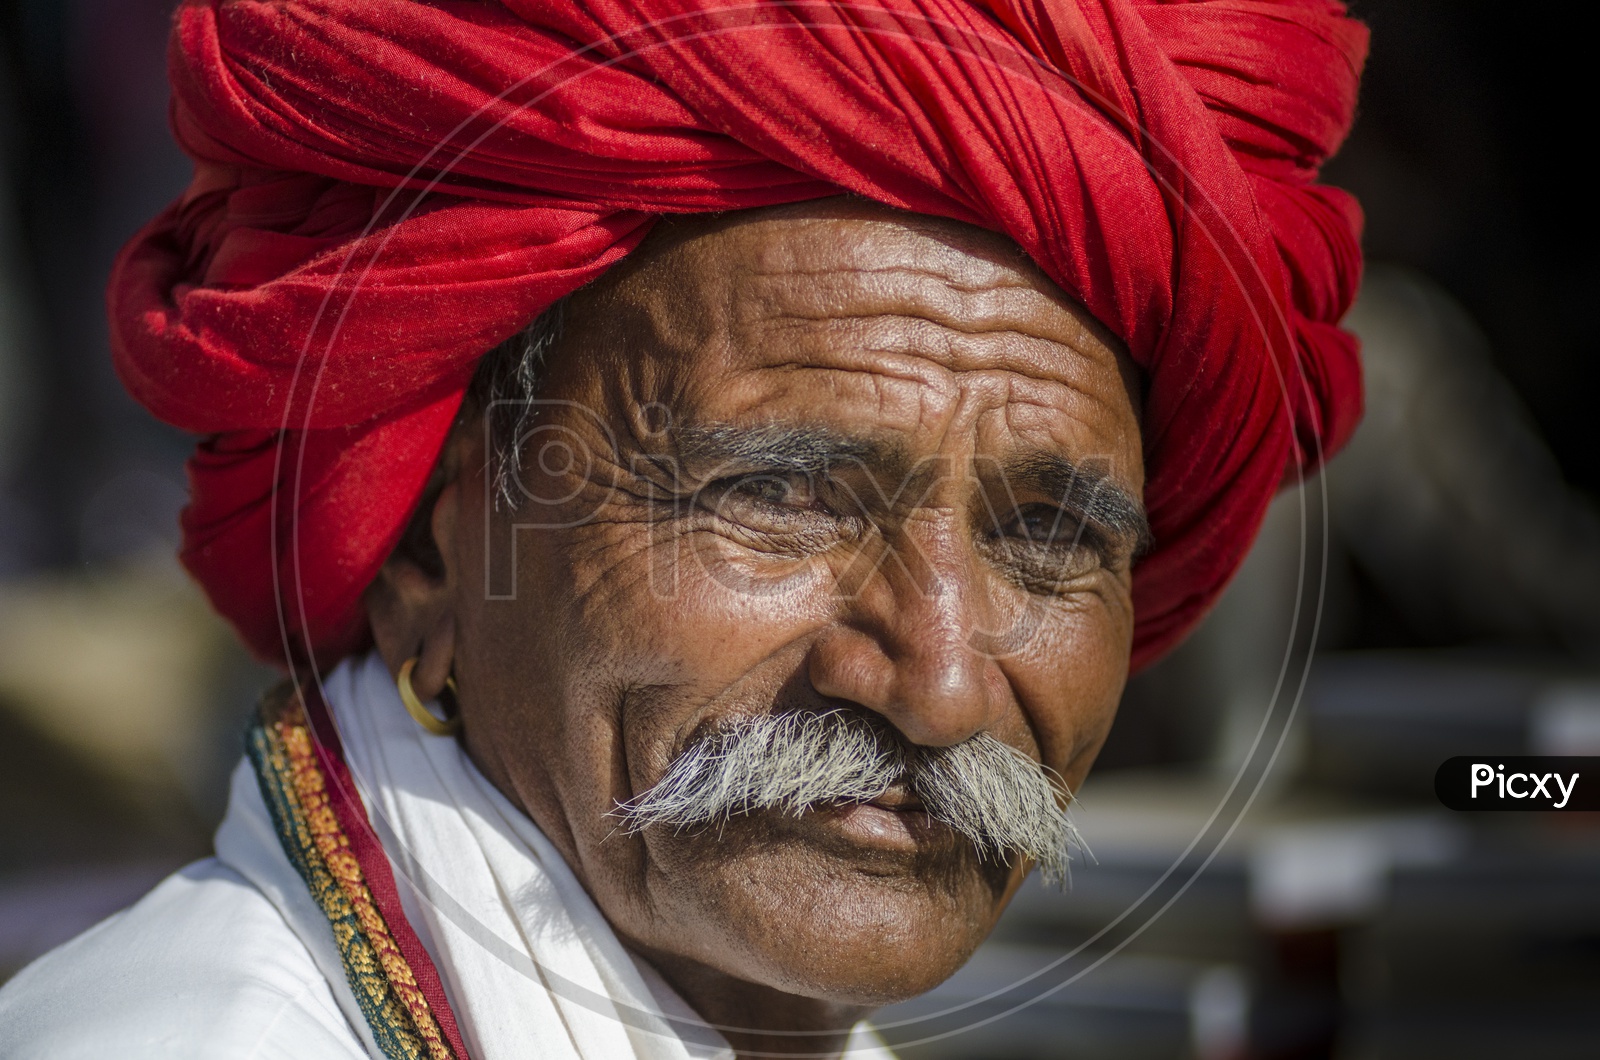 Rajasthani Man wearing Traditional Turban in Bundi, Rajasthan